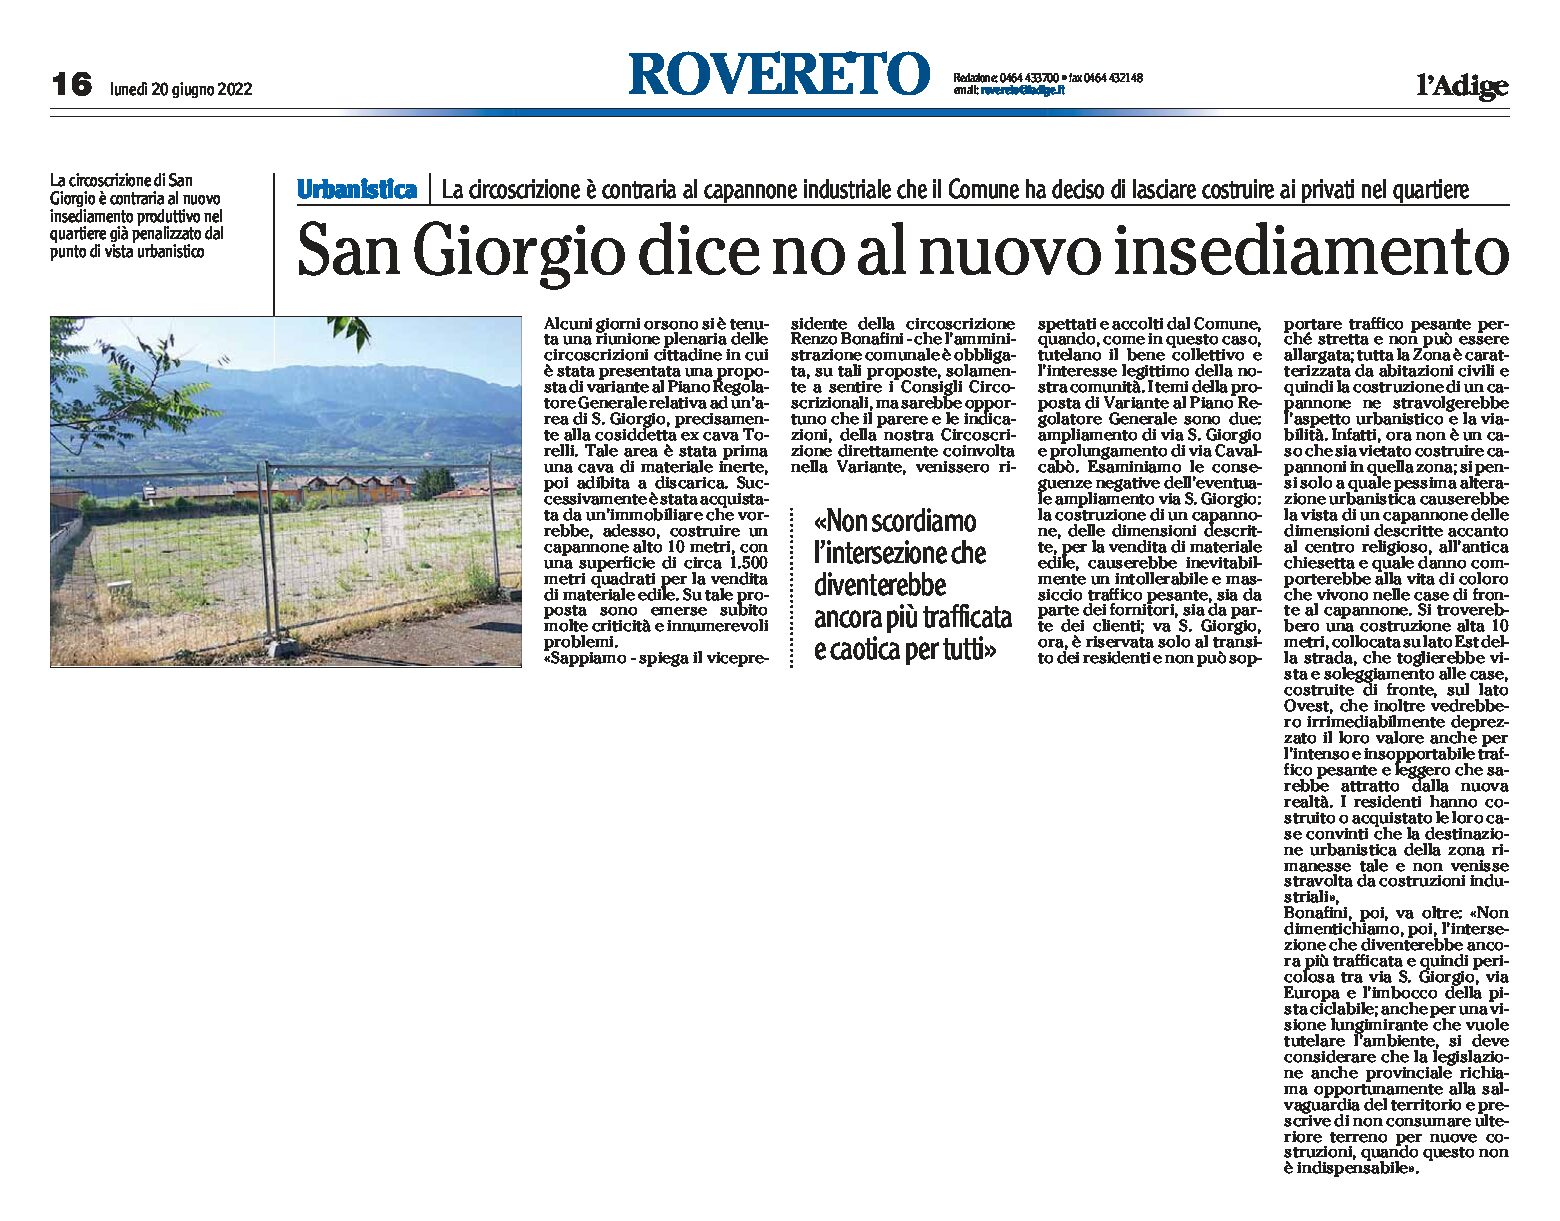 Rovereto, San Giorgio: la circoscrizione è contraria al nuovo insediamento